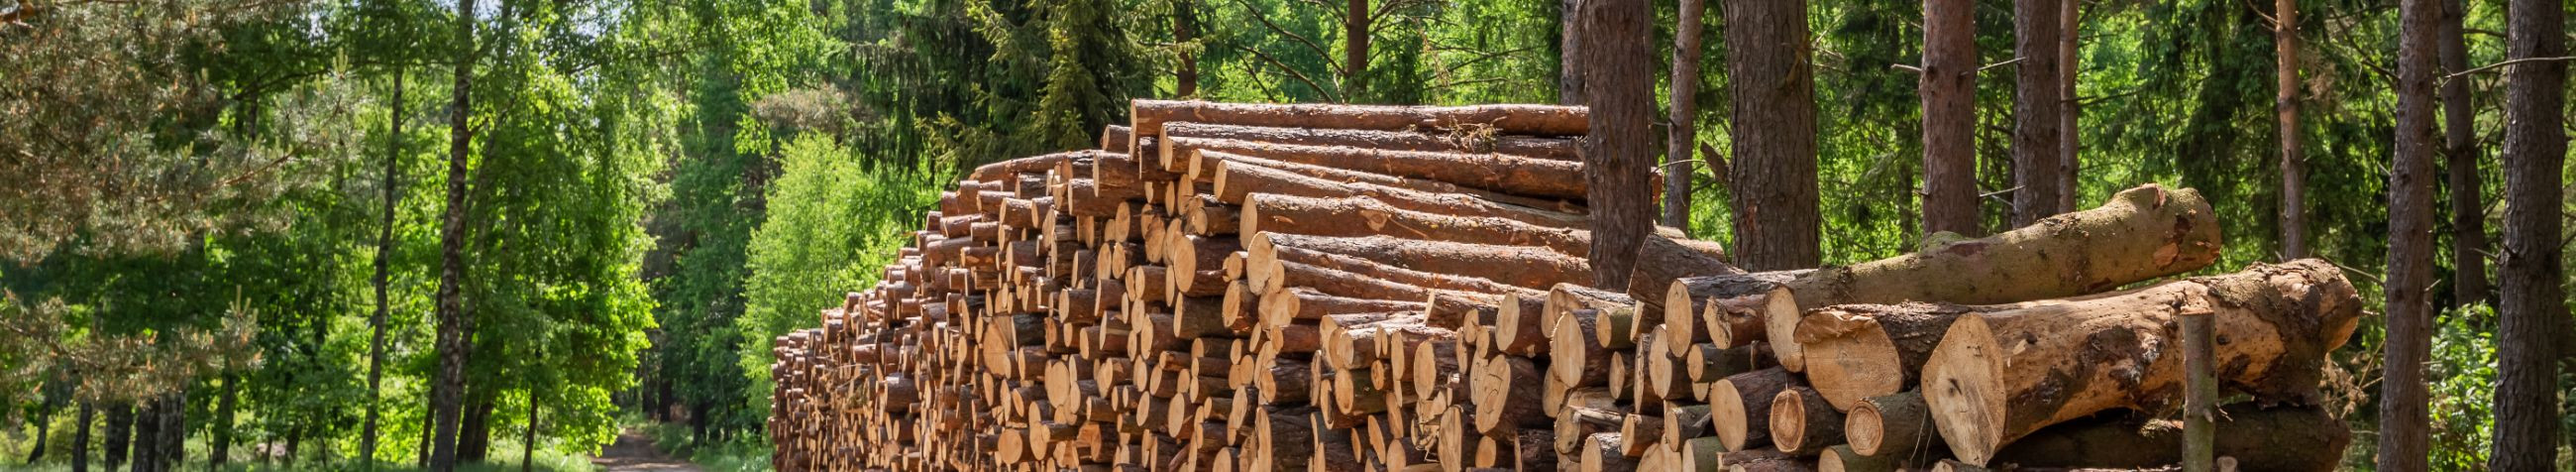 Pakume professionaalseid ja usaldusväärseid metsamajanduse teenuseid, sealhulgas metsamaa ostu ja metsakorraldust.